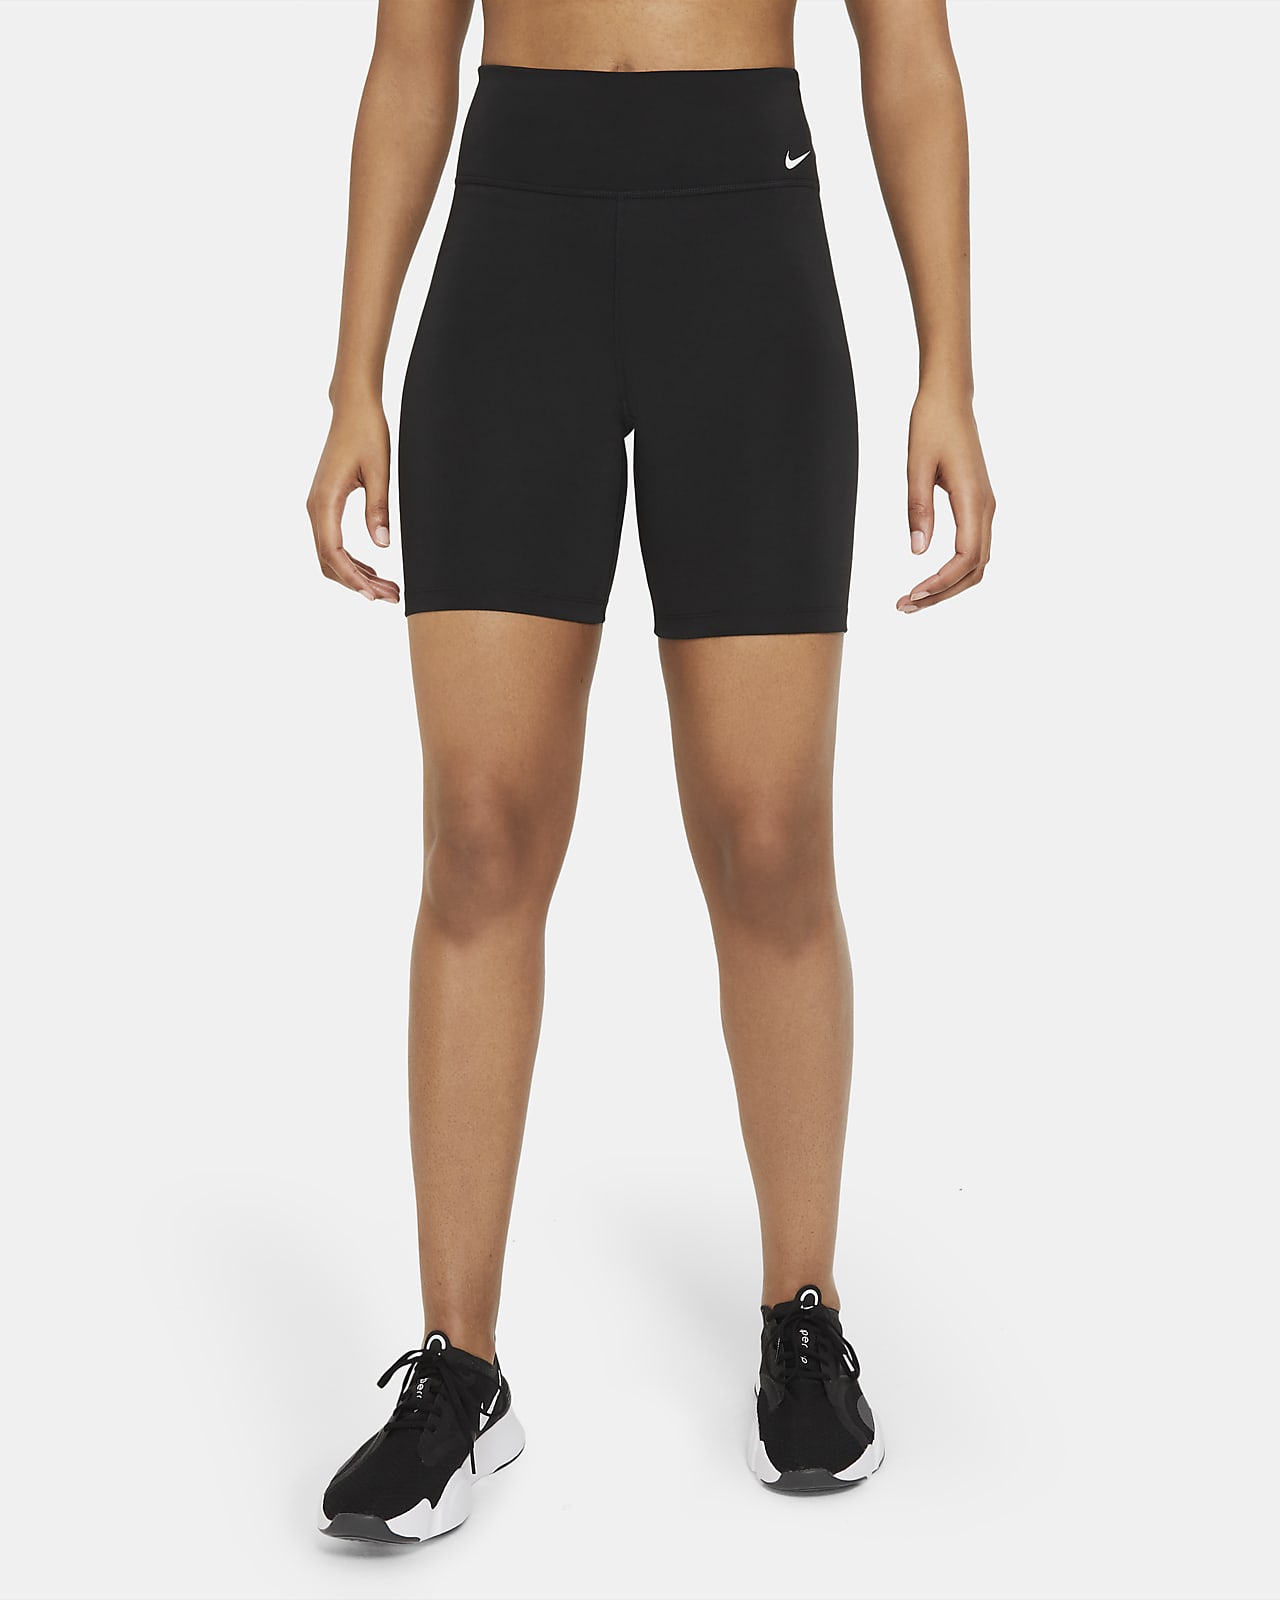 Nike One Normal Belli 18 cm Kadın Bisiklet Şortu